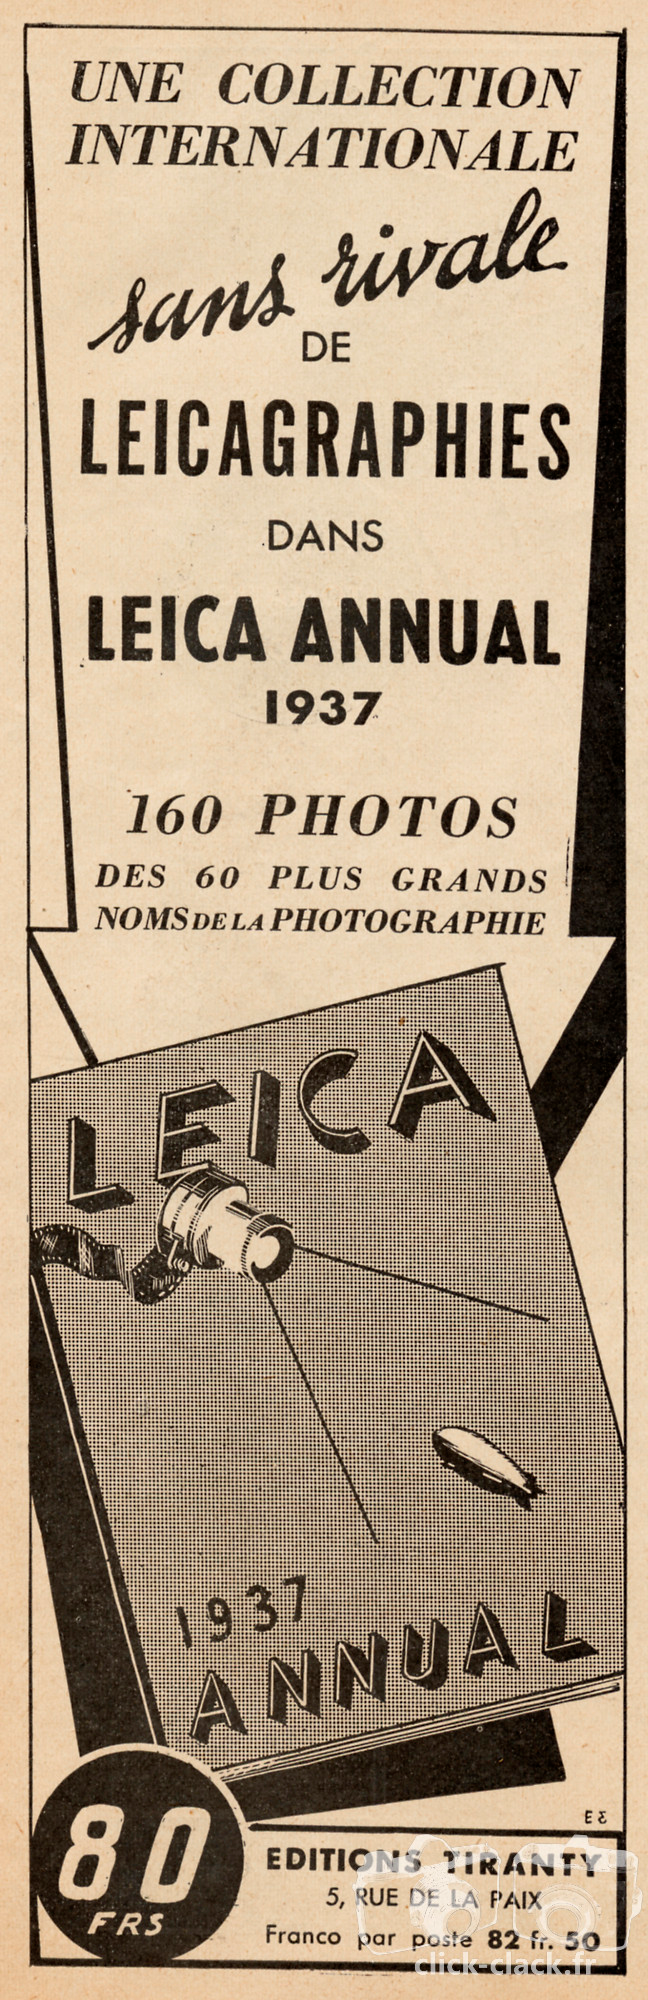 Tiranty - Leica Leitz - 1937